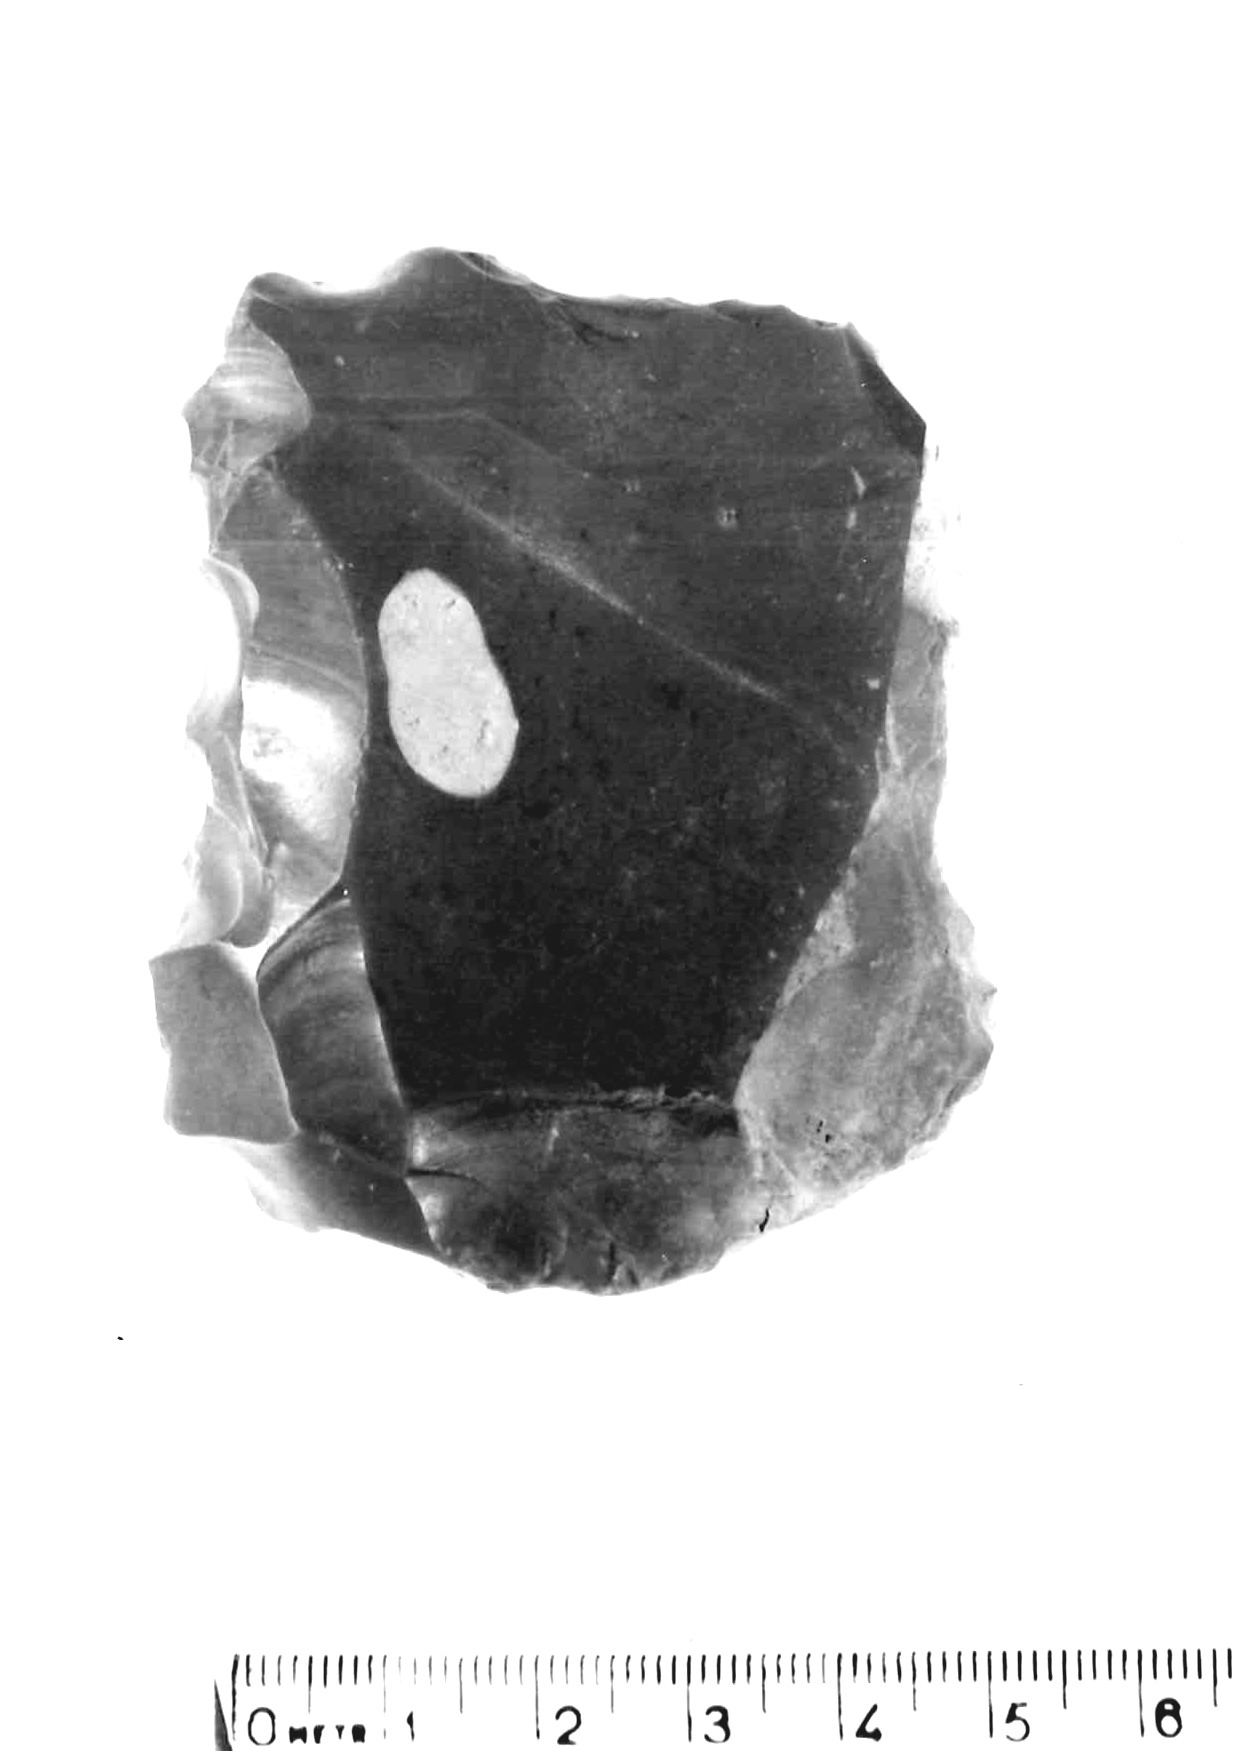 raschiatoio latero-trasversale - musteriano (paleolitico medio)